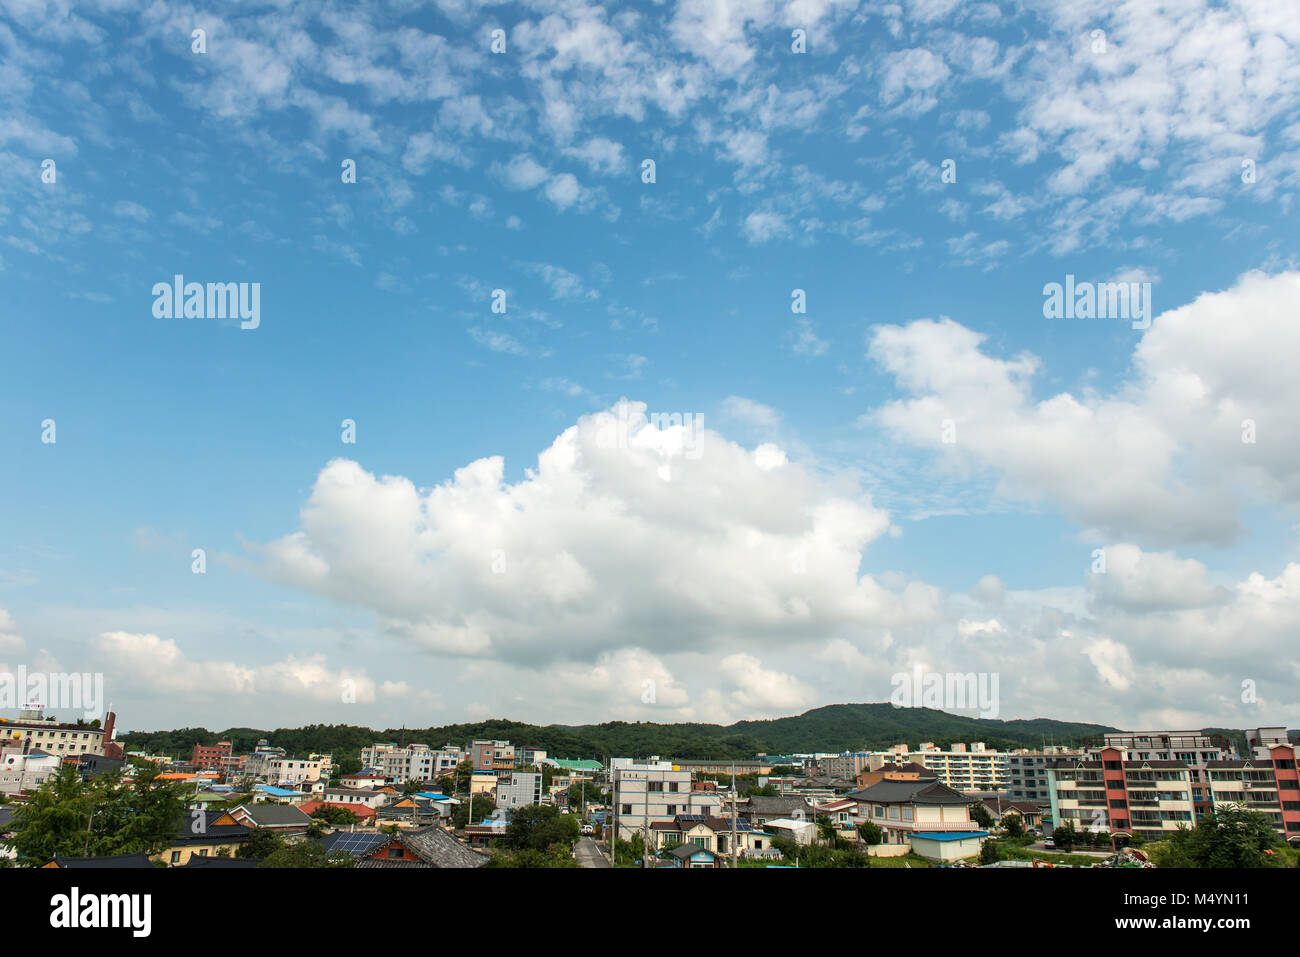 South Korea's Gyeongju, blue sky with cloud and city Stock Photo